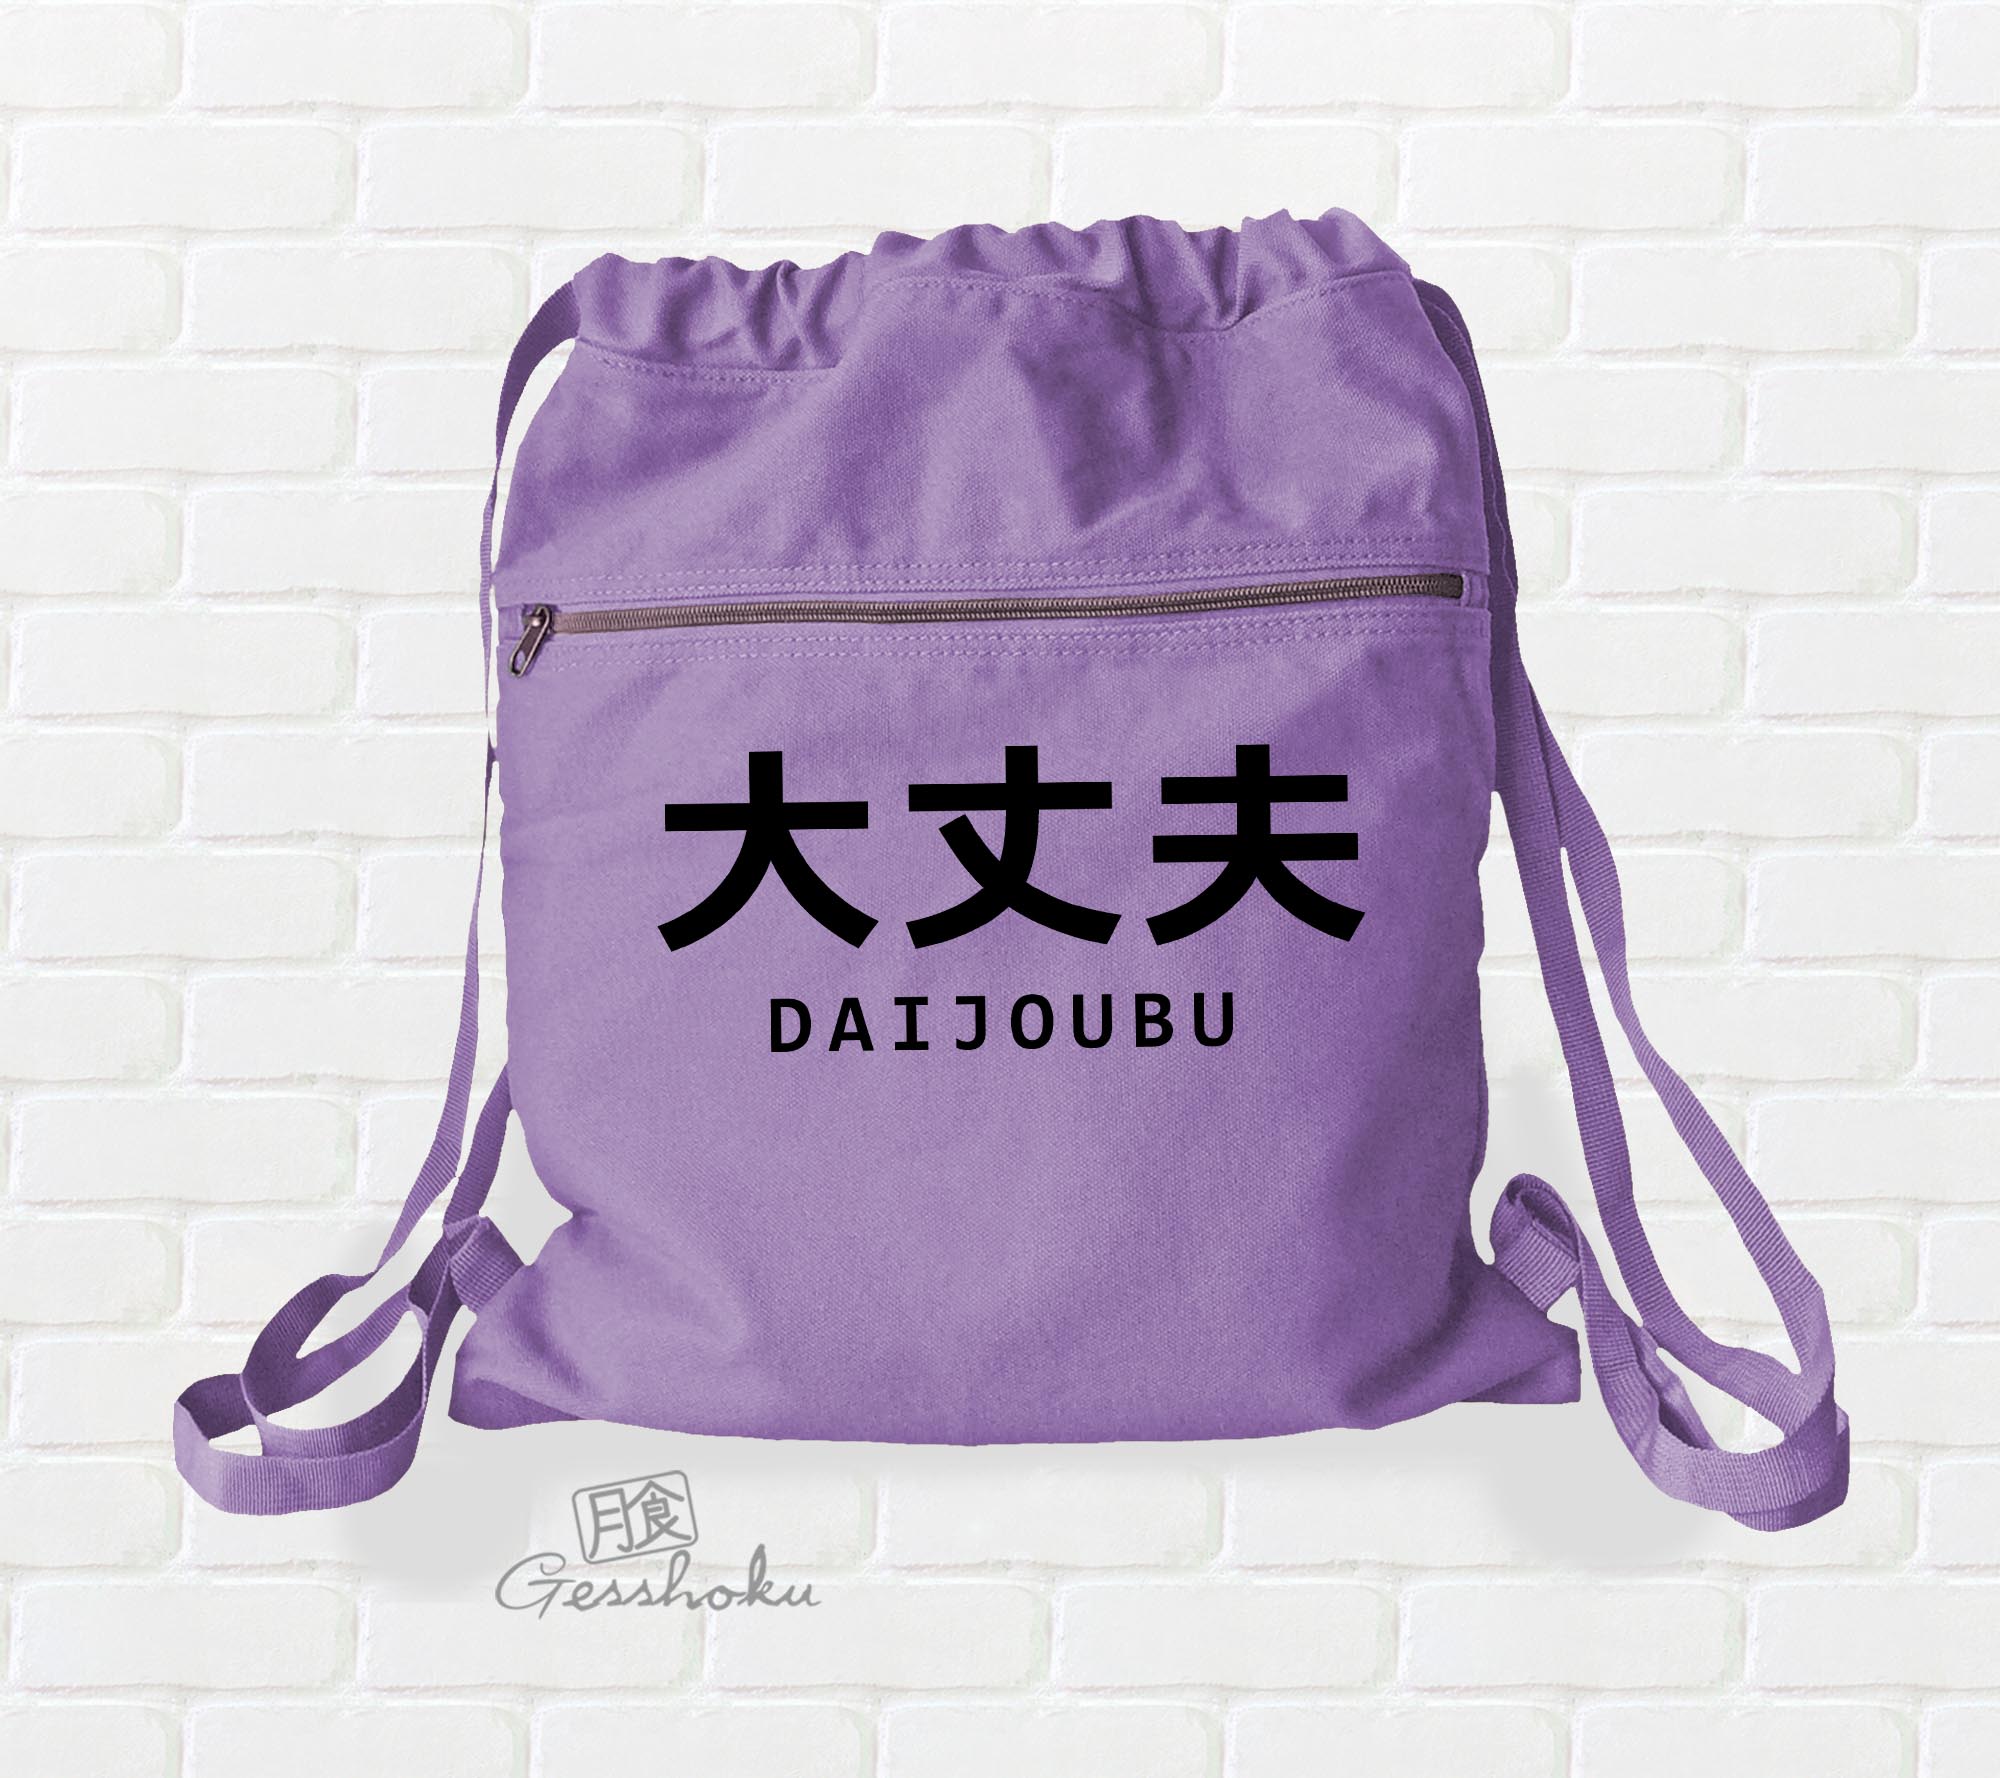 Daijoubu "It's Okay" Cinch Backpack - Purple